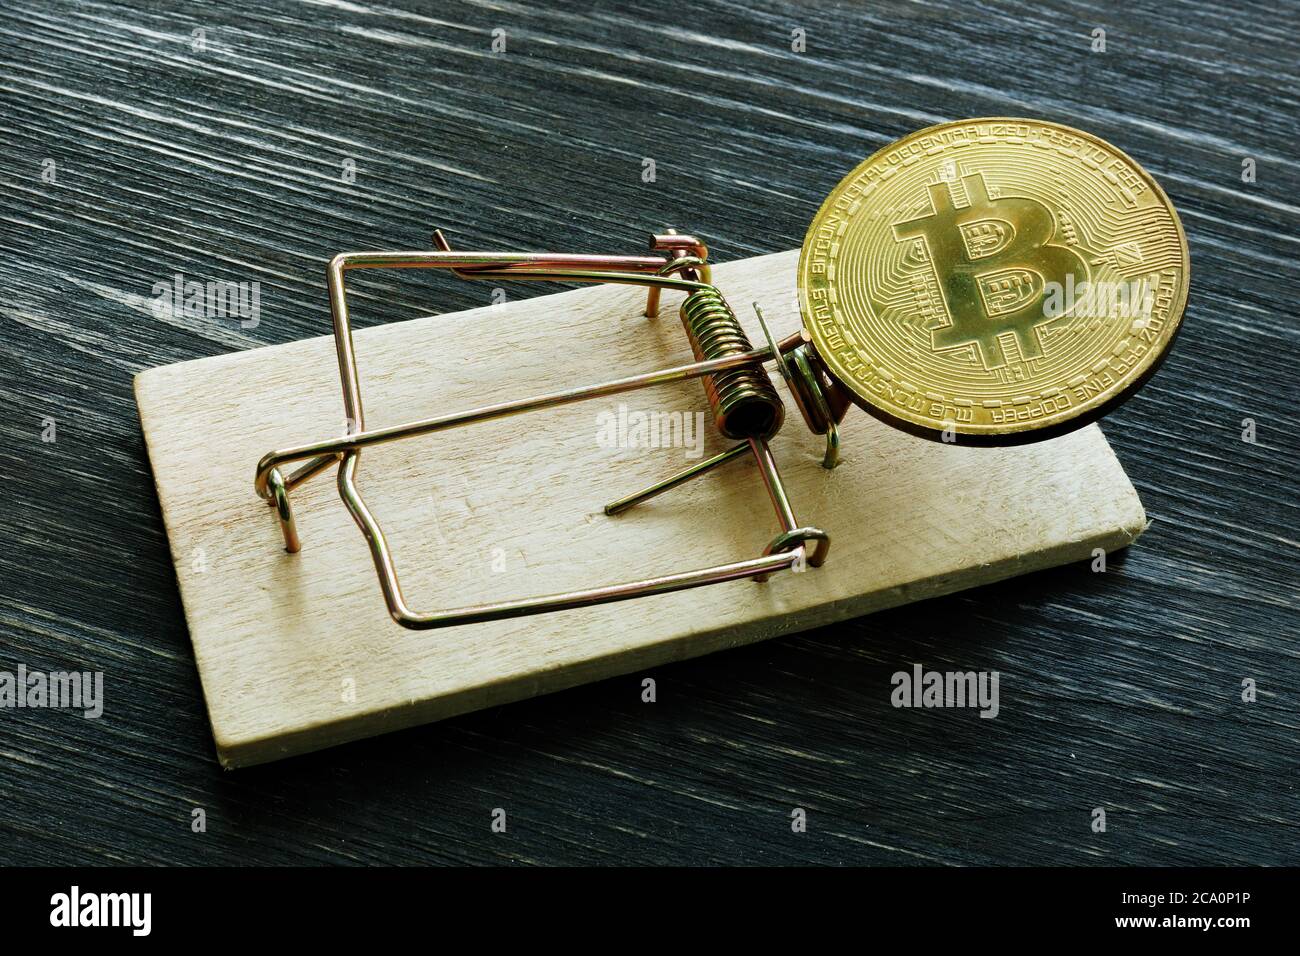 Mousetrap y moneda de bitcoin. Concepto de fraude o estafa por criptomoneda. Foto de stock